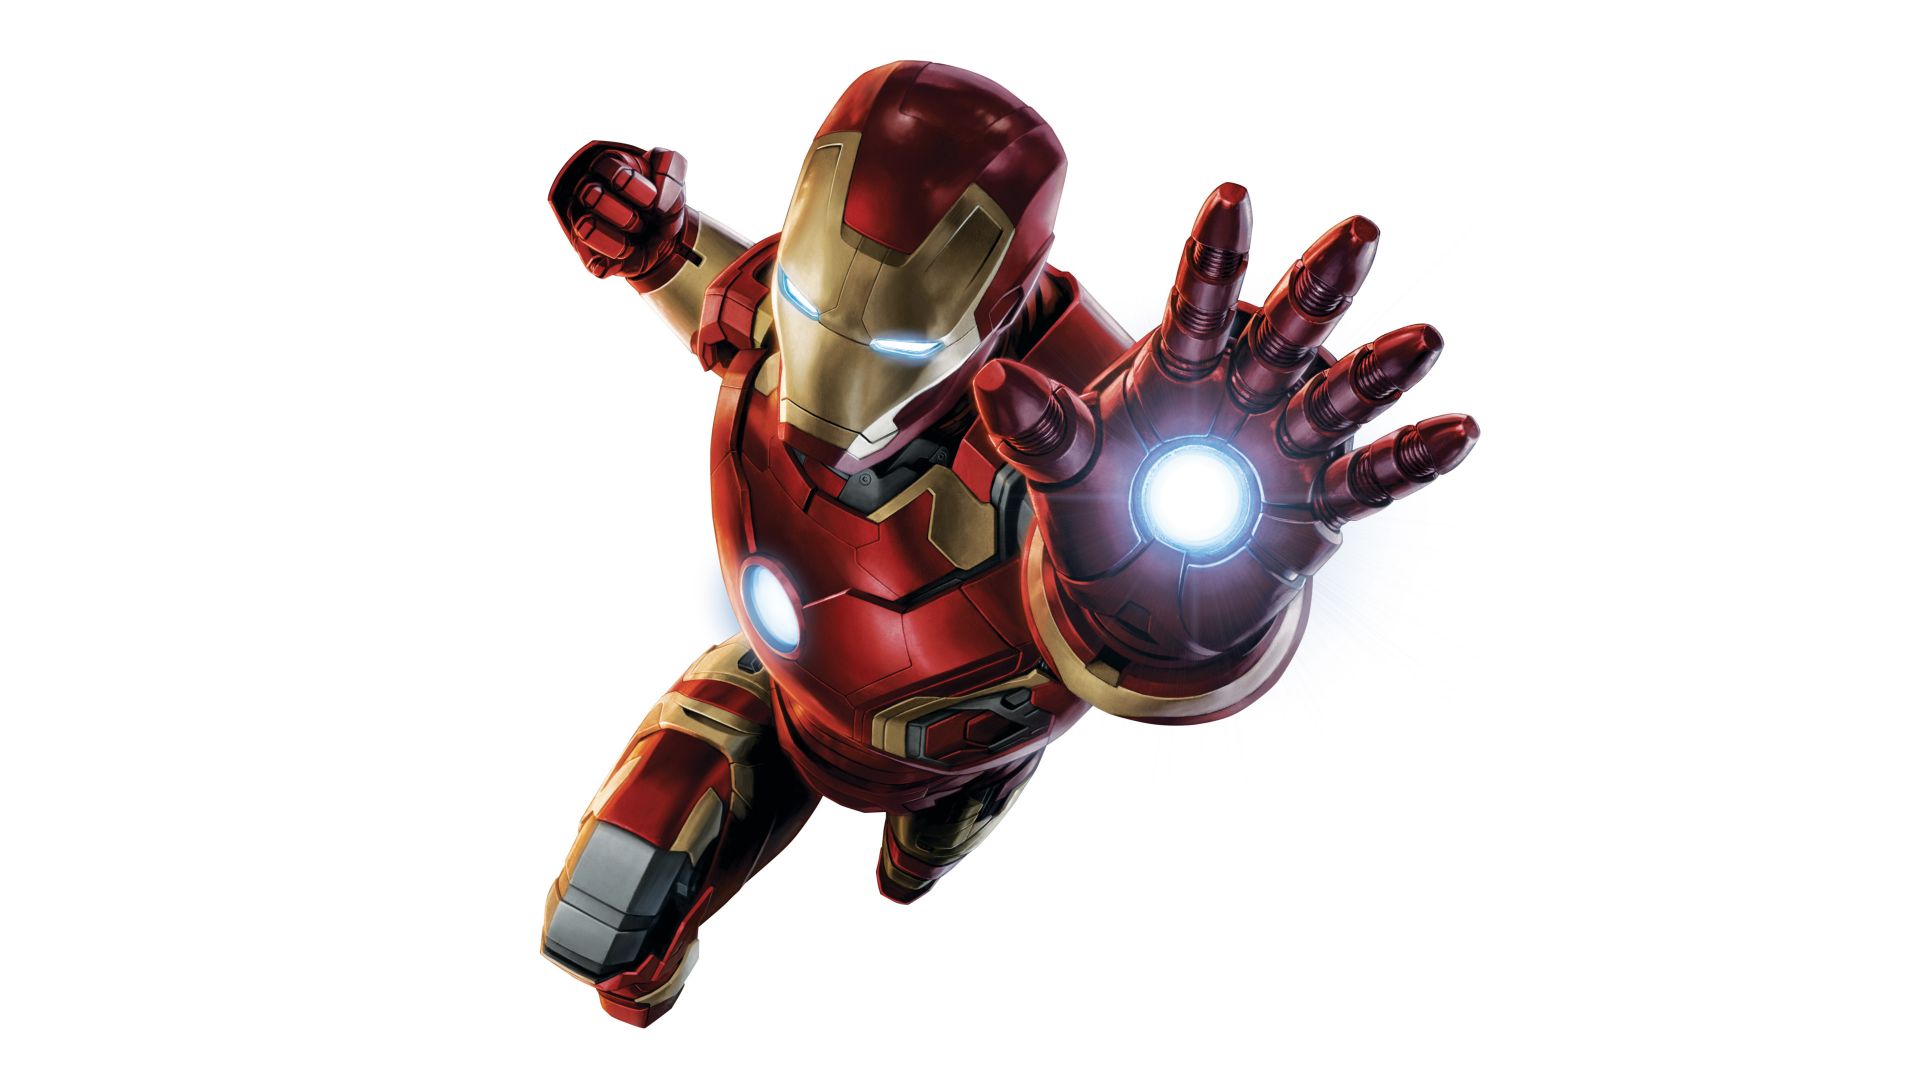 Desktop Wallpaper Iron Man, Minimal, 4k, 2017, Hd Image, Picture,  Background, B49825